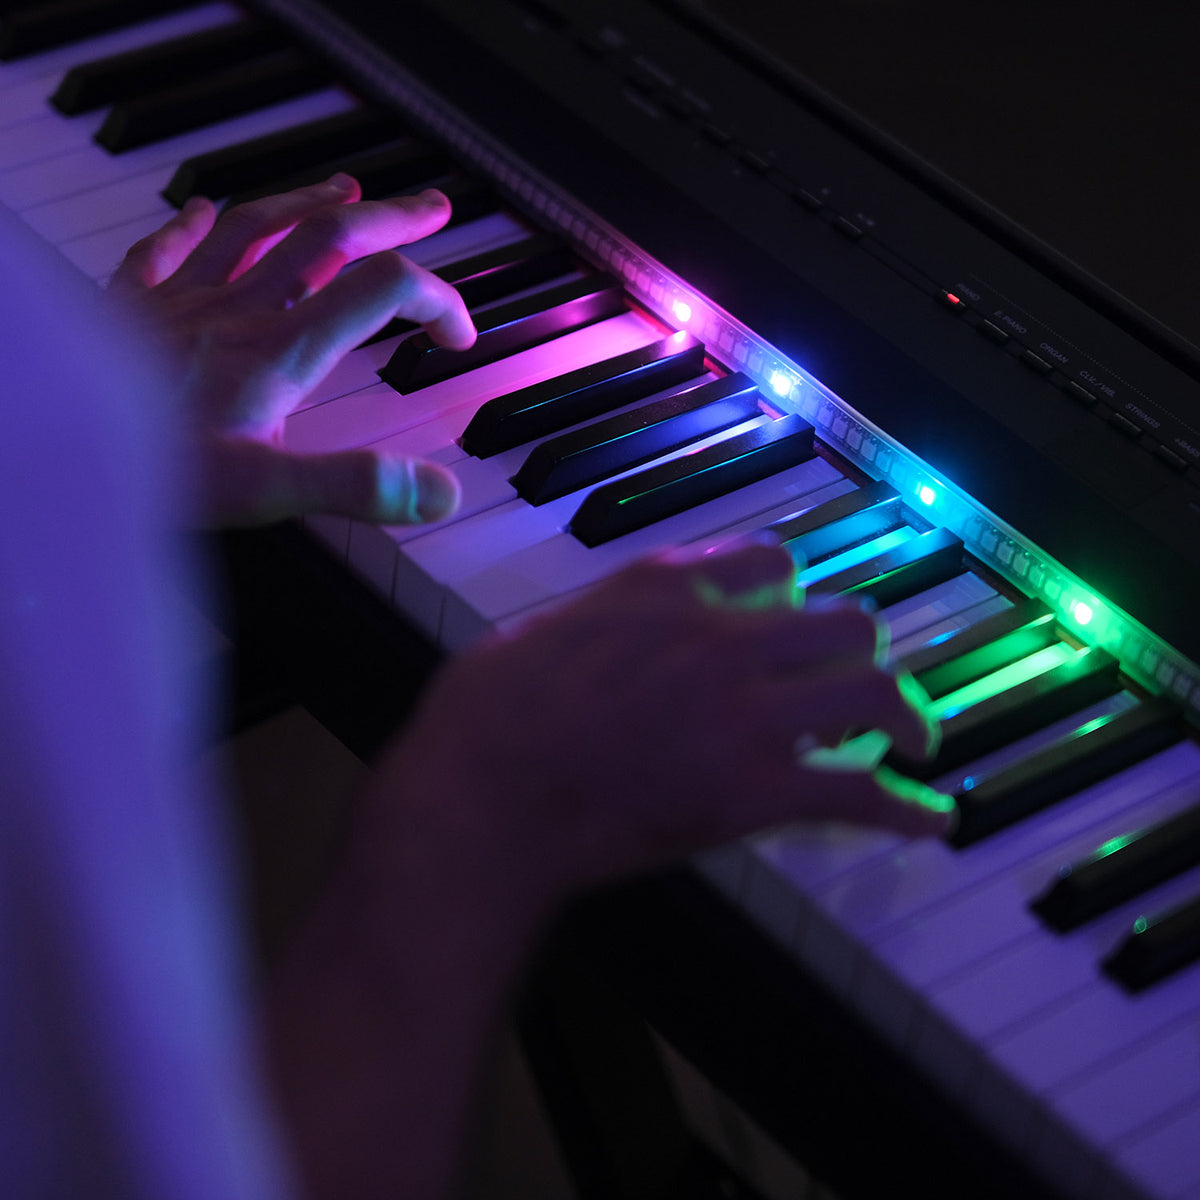 L'auto Player Piano 88 touche du clavier système Clavier MIDI